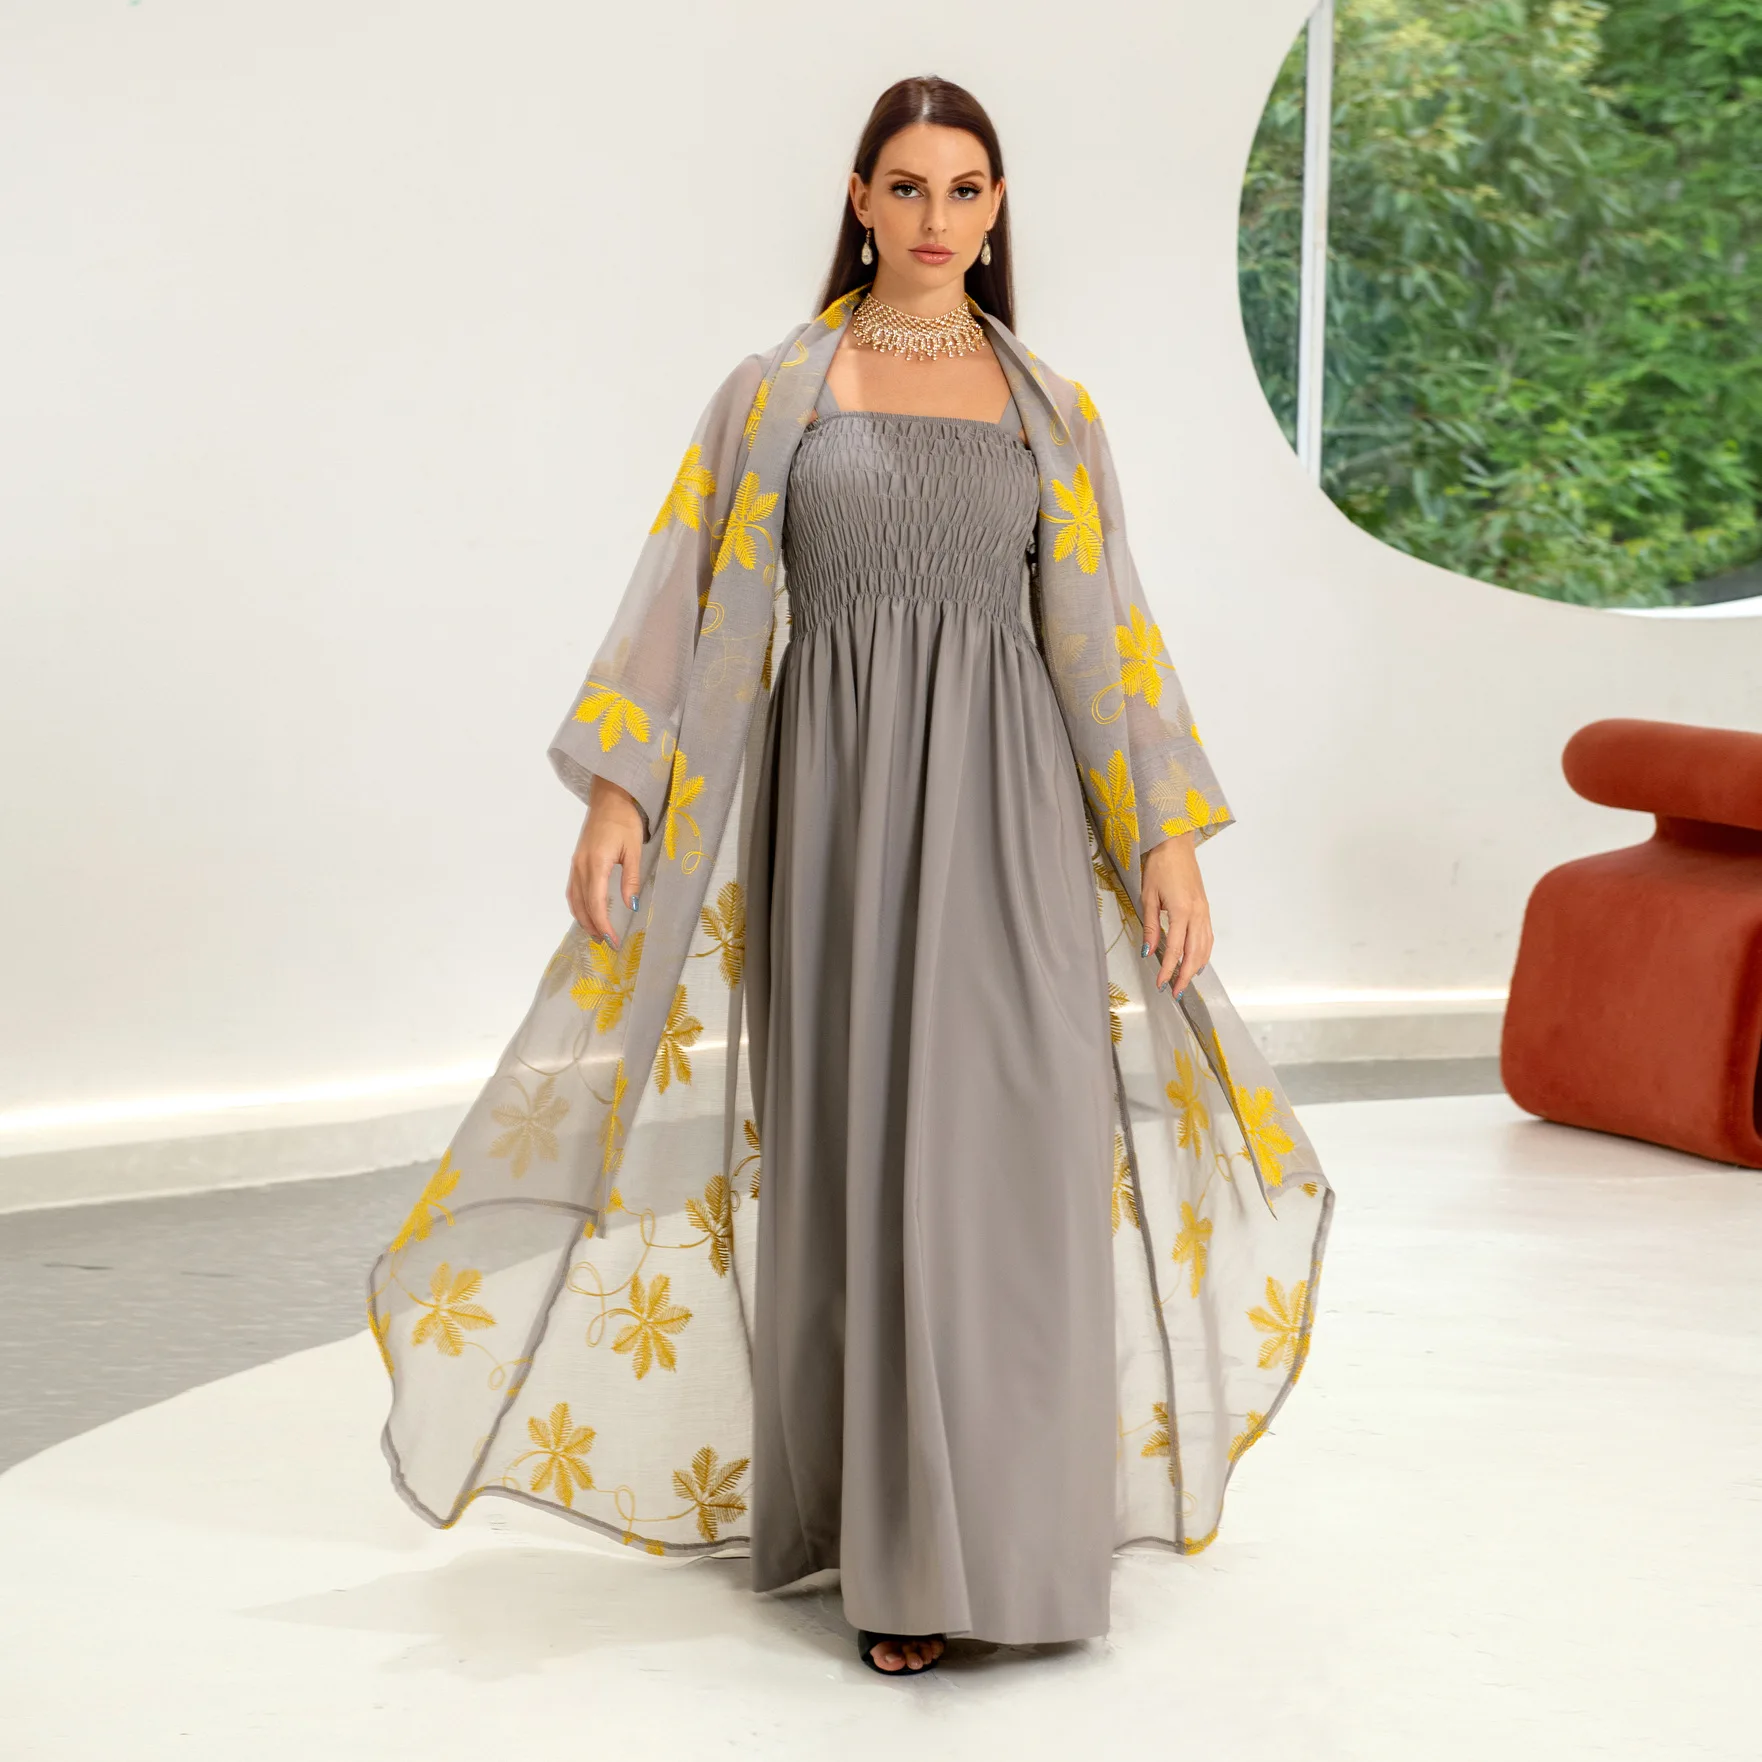 

Женское газовое платье Среднего Востока, мусульманское цельнокроеное платье из двух частей с серыми подтяжками и вырезом, рукоделие